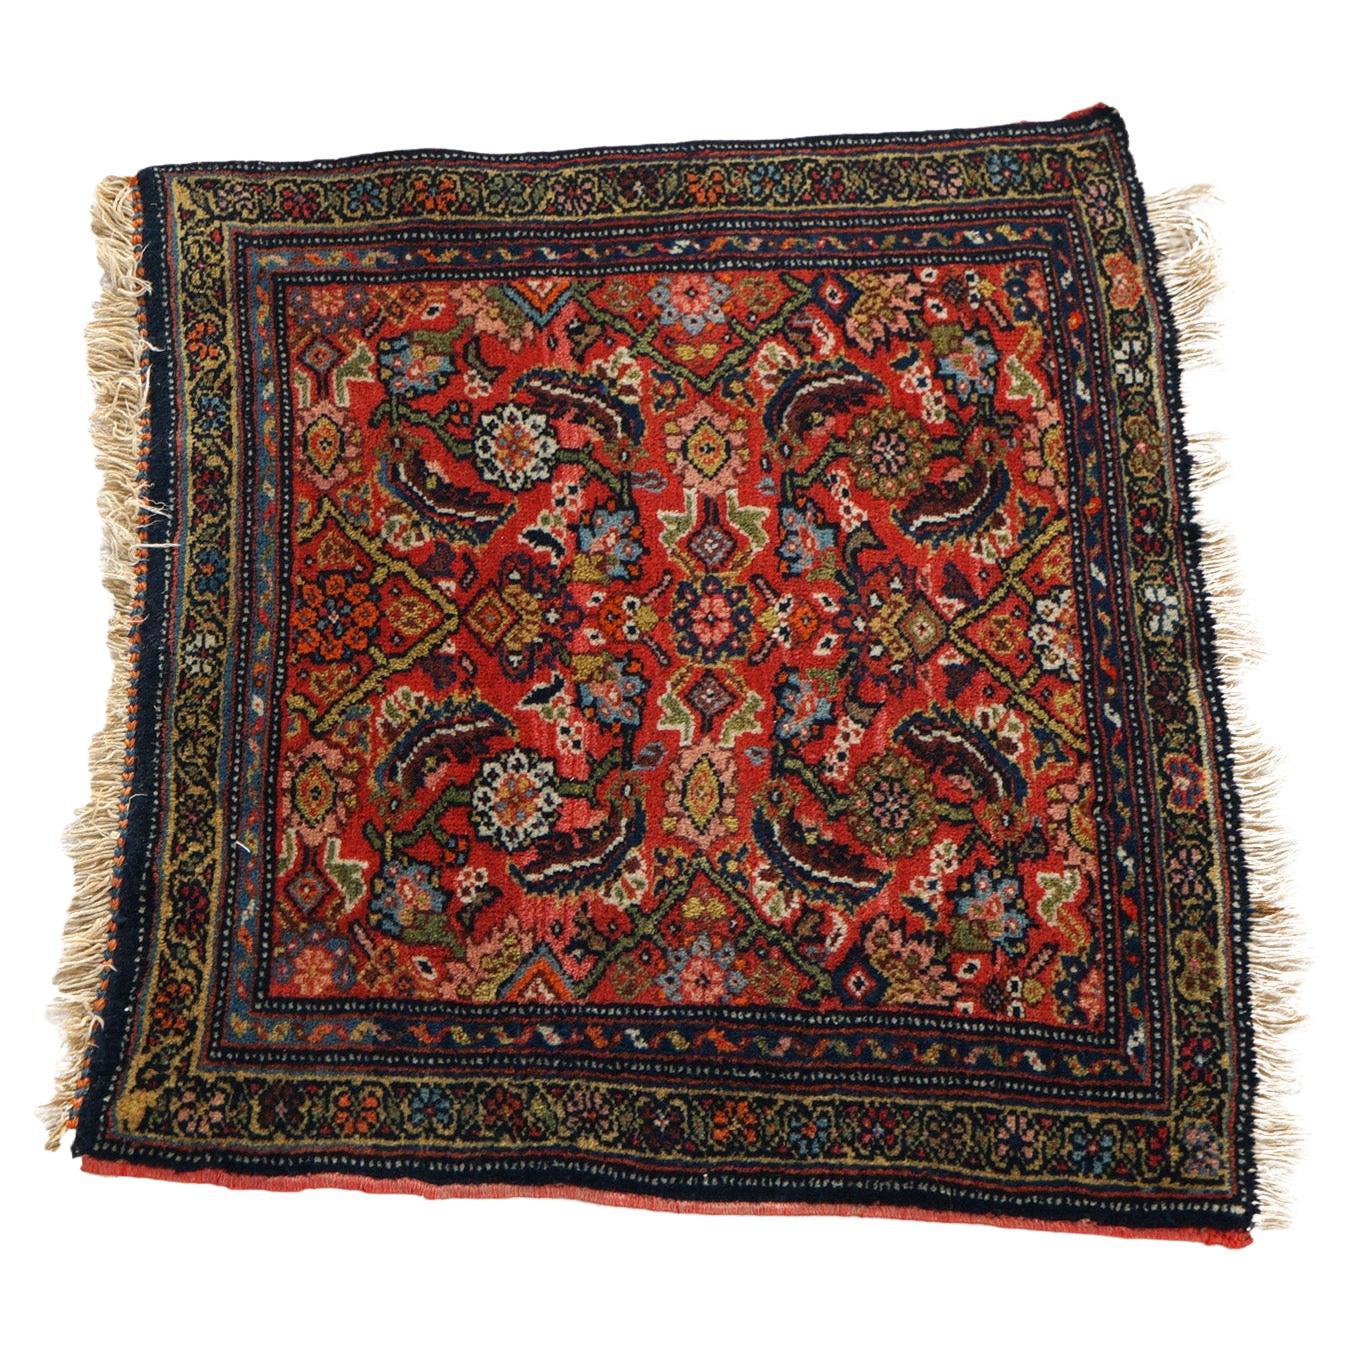 Antique Herati Design Oriental Wool Rug Circa 1920